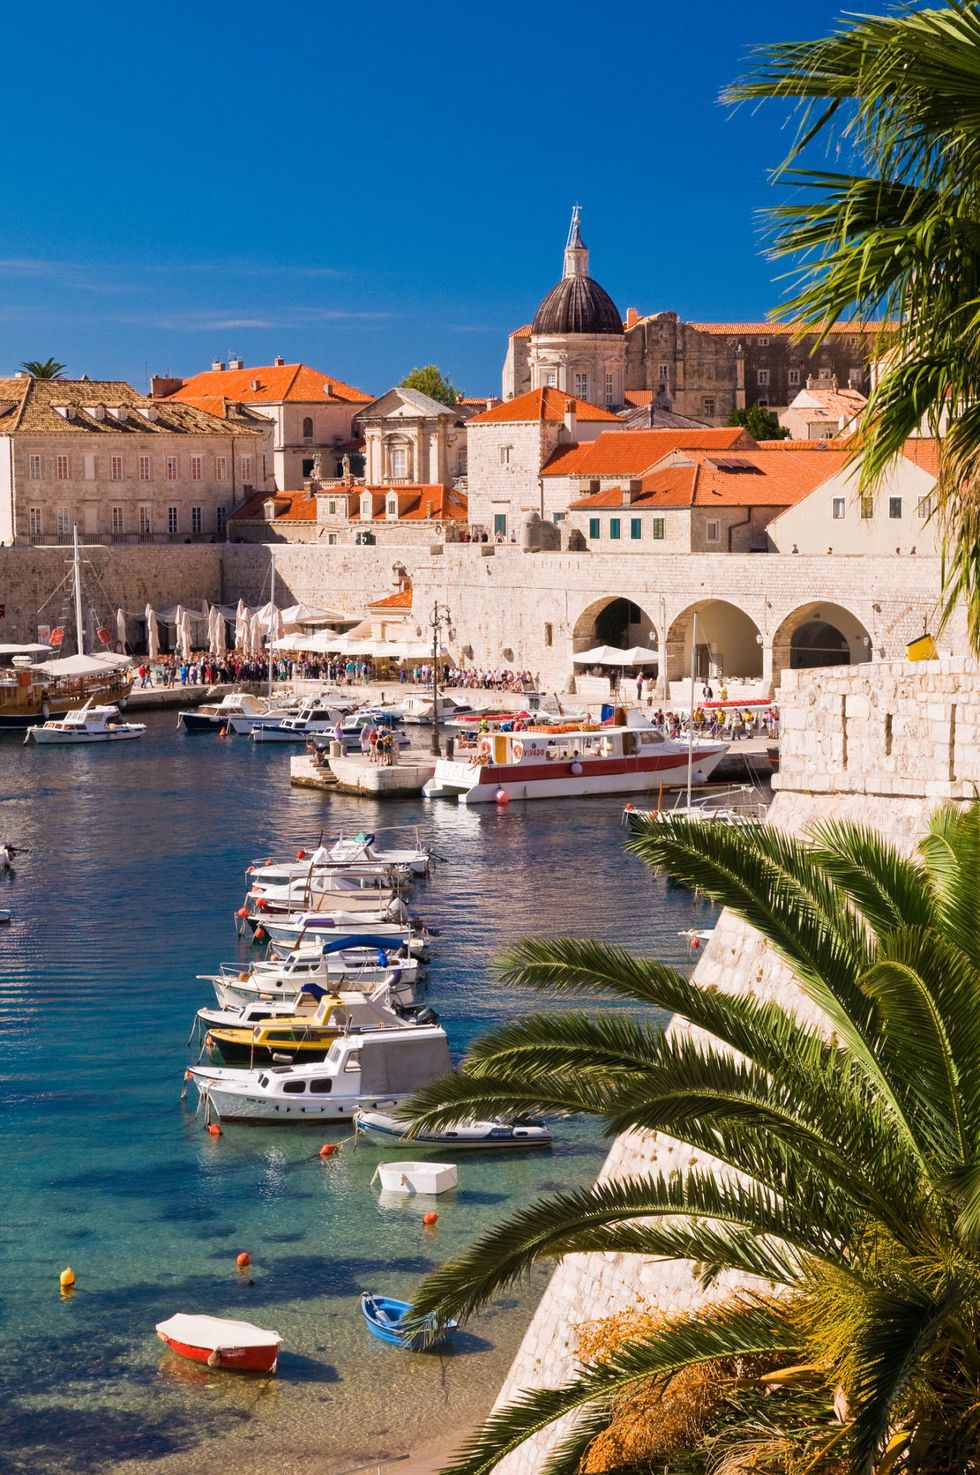 <p>Ooit was deze haven één van de belangrijkste in het Middellandse Zeegebied. Nu worden er dagelijks massa's toeristen gedropt die vanaf hun cruiseschepen een wandeling willen maken door de oude haven. Wie trek heeft, moet naar <a href="http://www.mea-culpa.hr/index.php?restaurant=restaurants_seaview&dubrovnik=en" target="_blank" rel="nofollow" title="Peskarija Dubrovnik">Lokanda Peskarij</a>: hier kun je genieten van een groot bord verse vis (gamba's, mosselen, octopus, inktvisringen, oesters) en het uitzicht op zee krijg je er gratis en voor niets bij. Ook leuk is <a href="http://www.mea-culpa.hr/index.php?restaurant=arsenal_oldcity&dubrovnik=en" target="_blank" rel="nofollow" title="Taverna Arsenal Dubrovnik">Taverna Arsenal</a>, een beschut terras, topgerechten en uitzicht op de haven. </p>